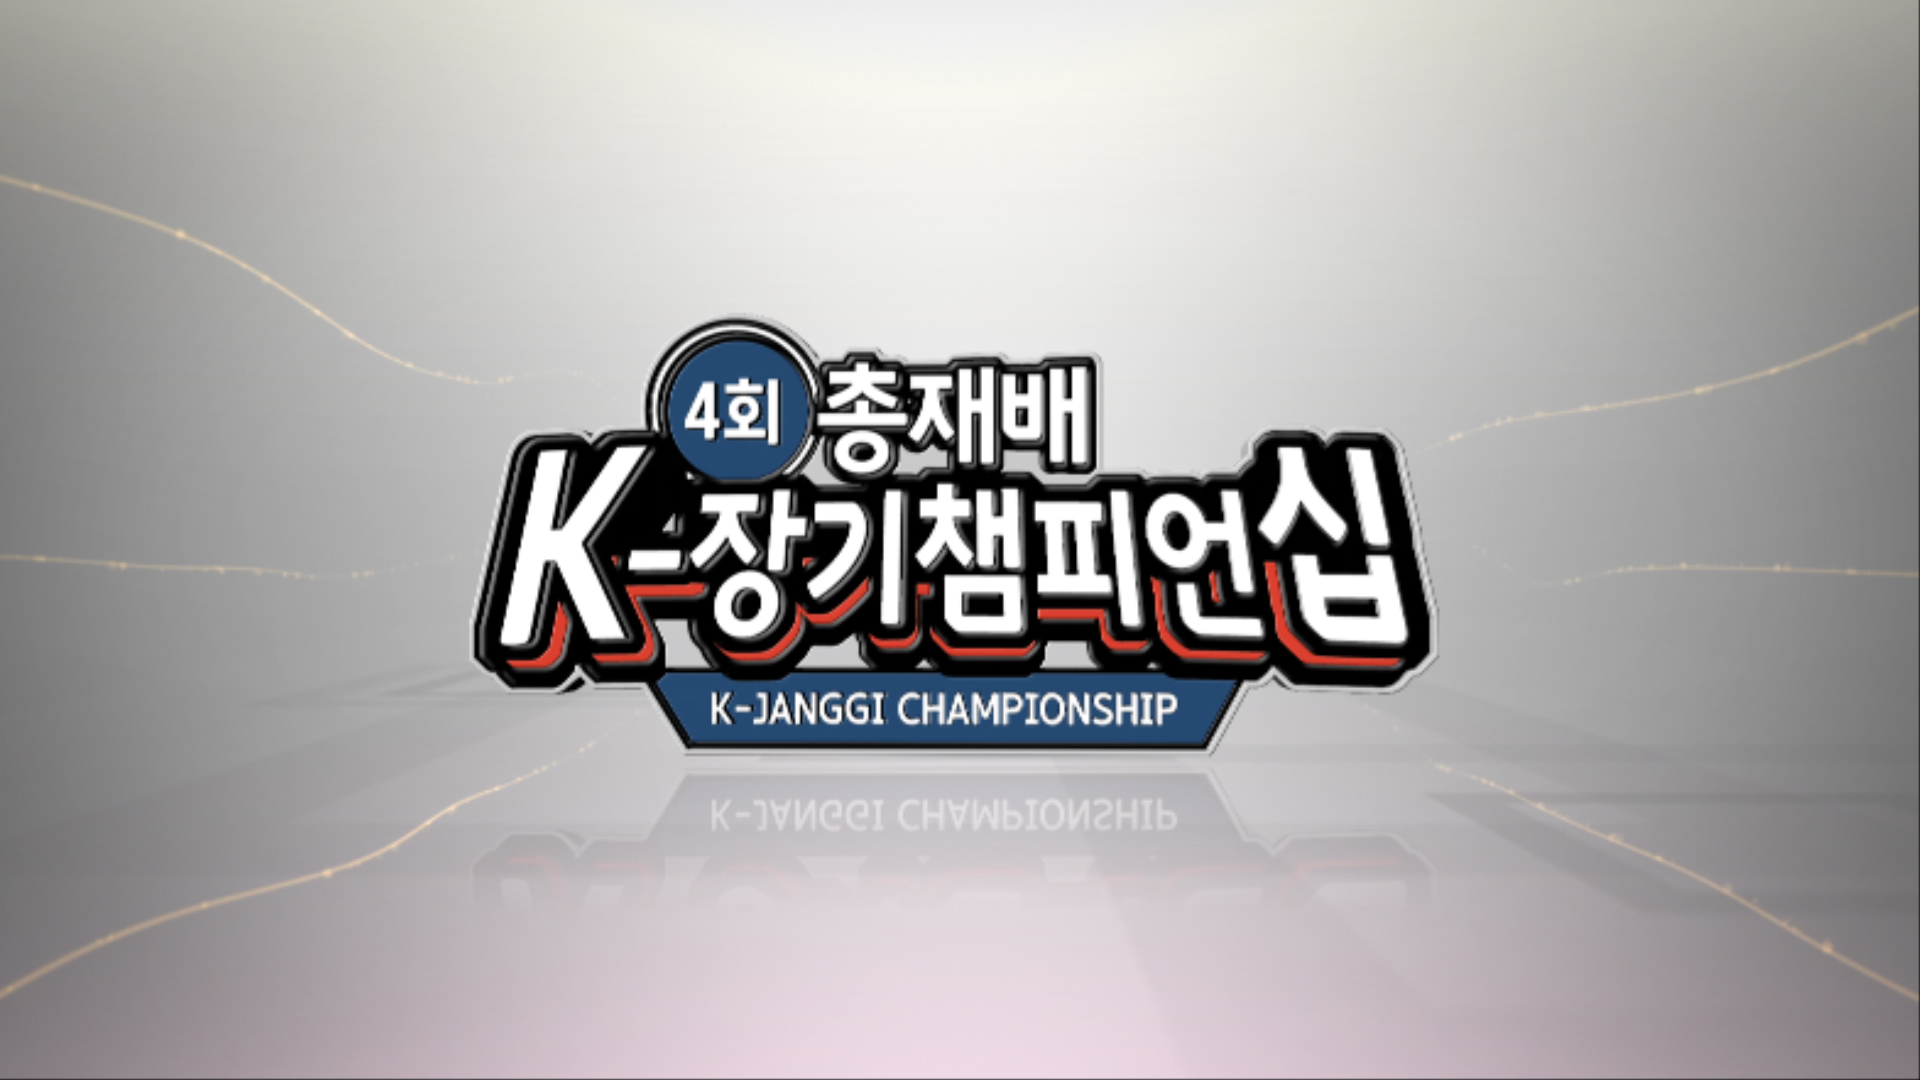 4회 K-장기 챔피언십 전타이틀 0000013259ms.png